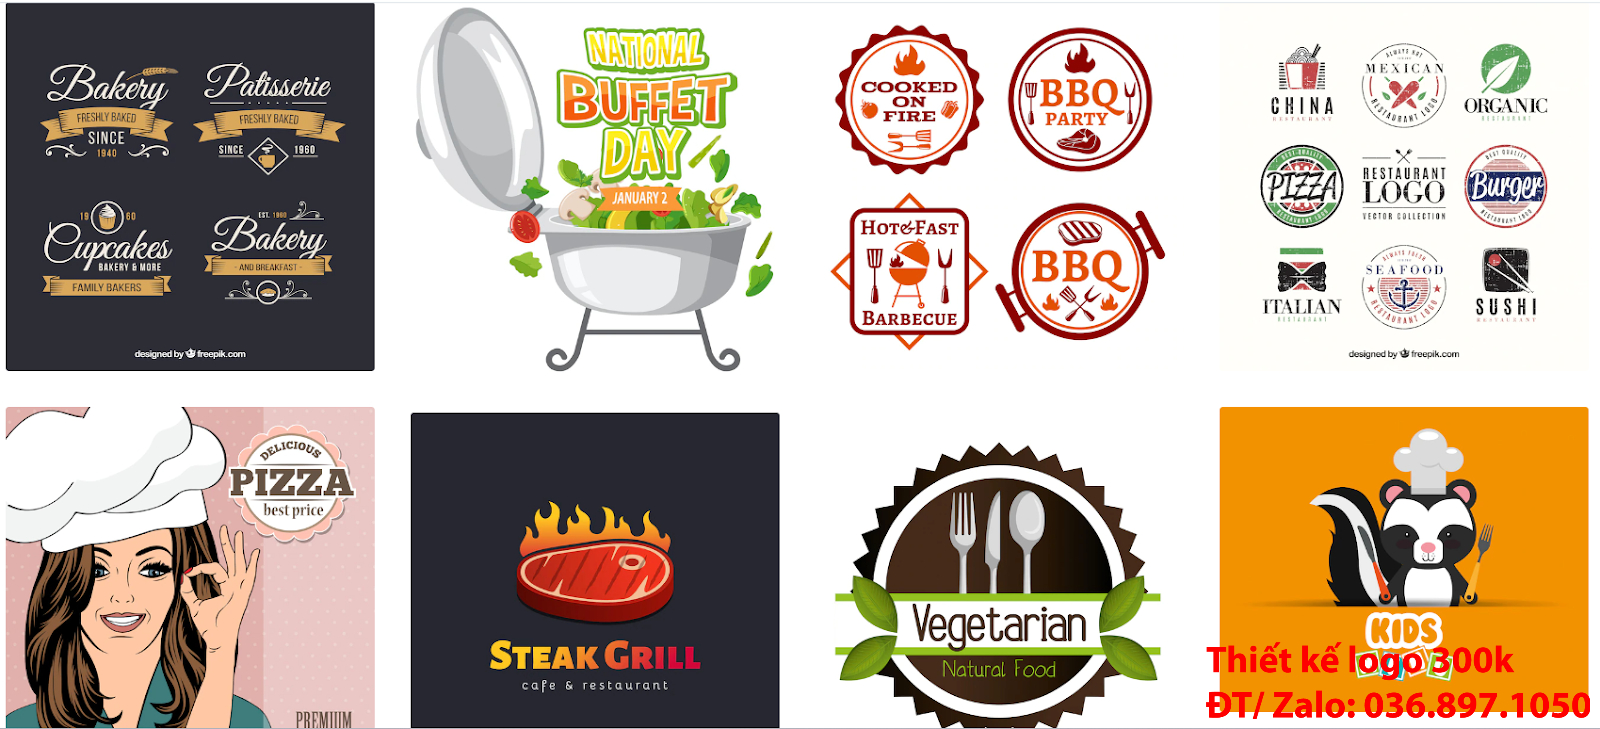 Nhận tạo Mẫu logo đầu bếp chef cook đẹp miễn phí online cho các công ty tại khu vực TpHCM chuyên nghiệp uy tín nhất